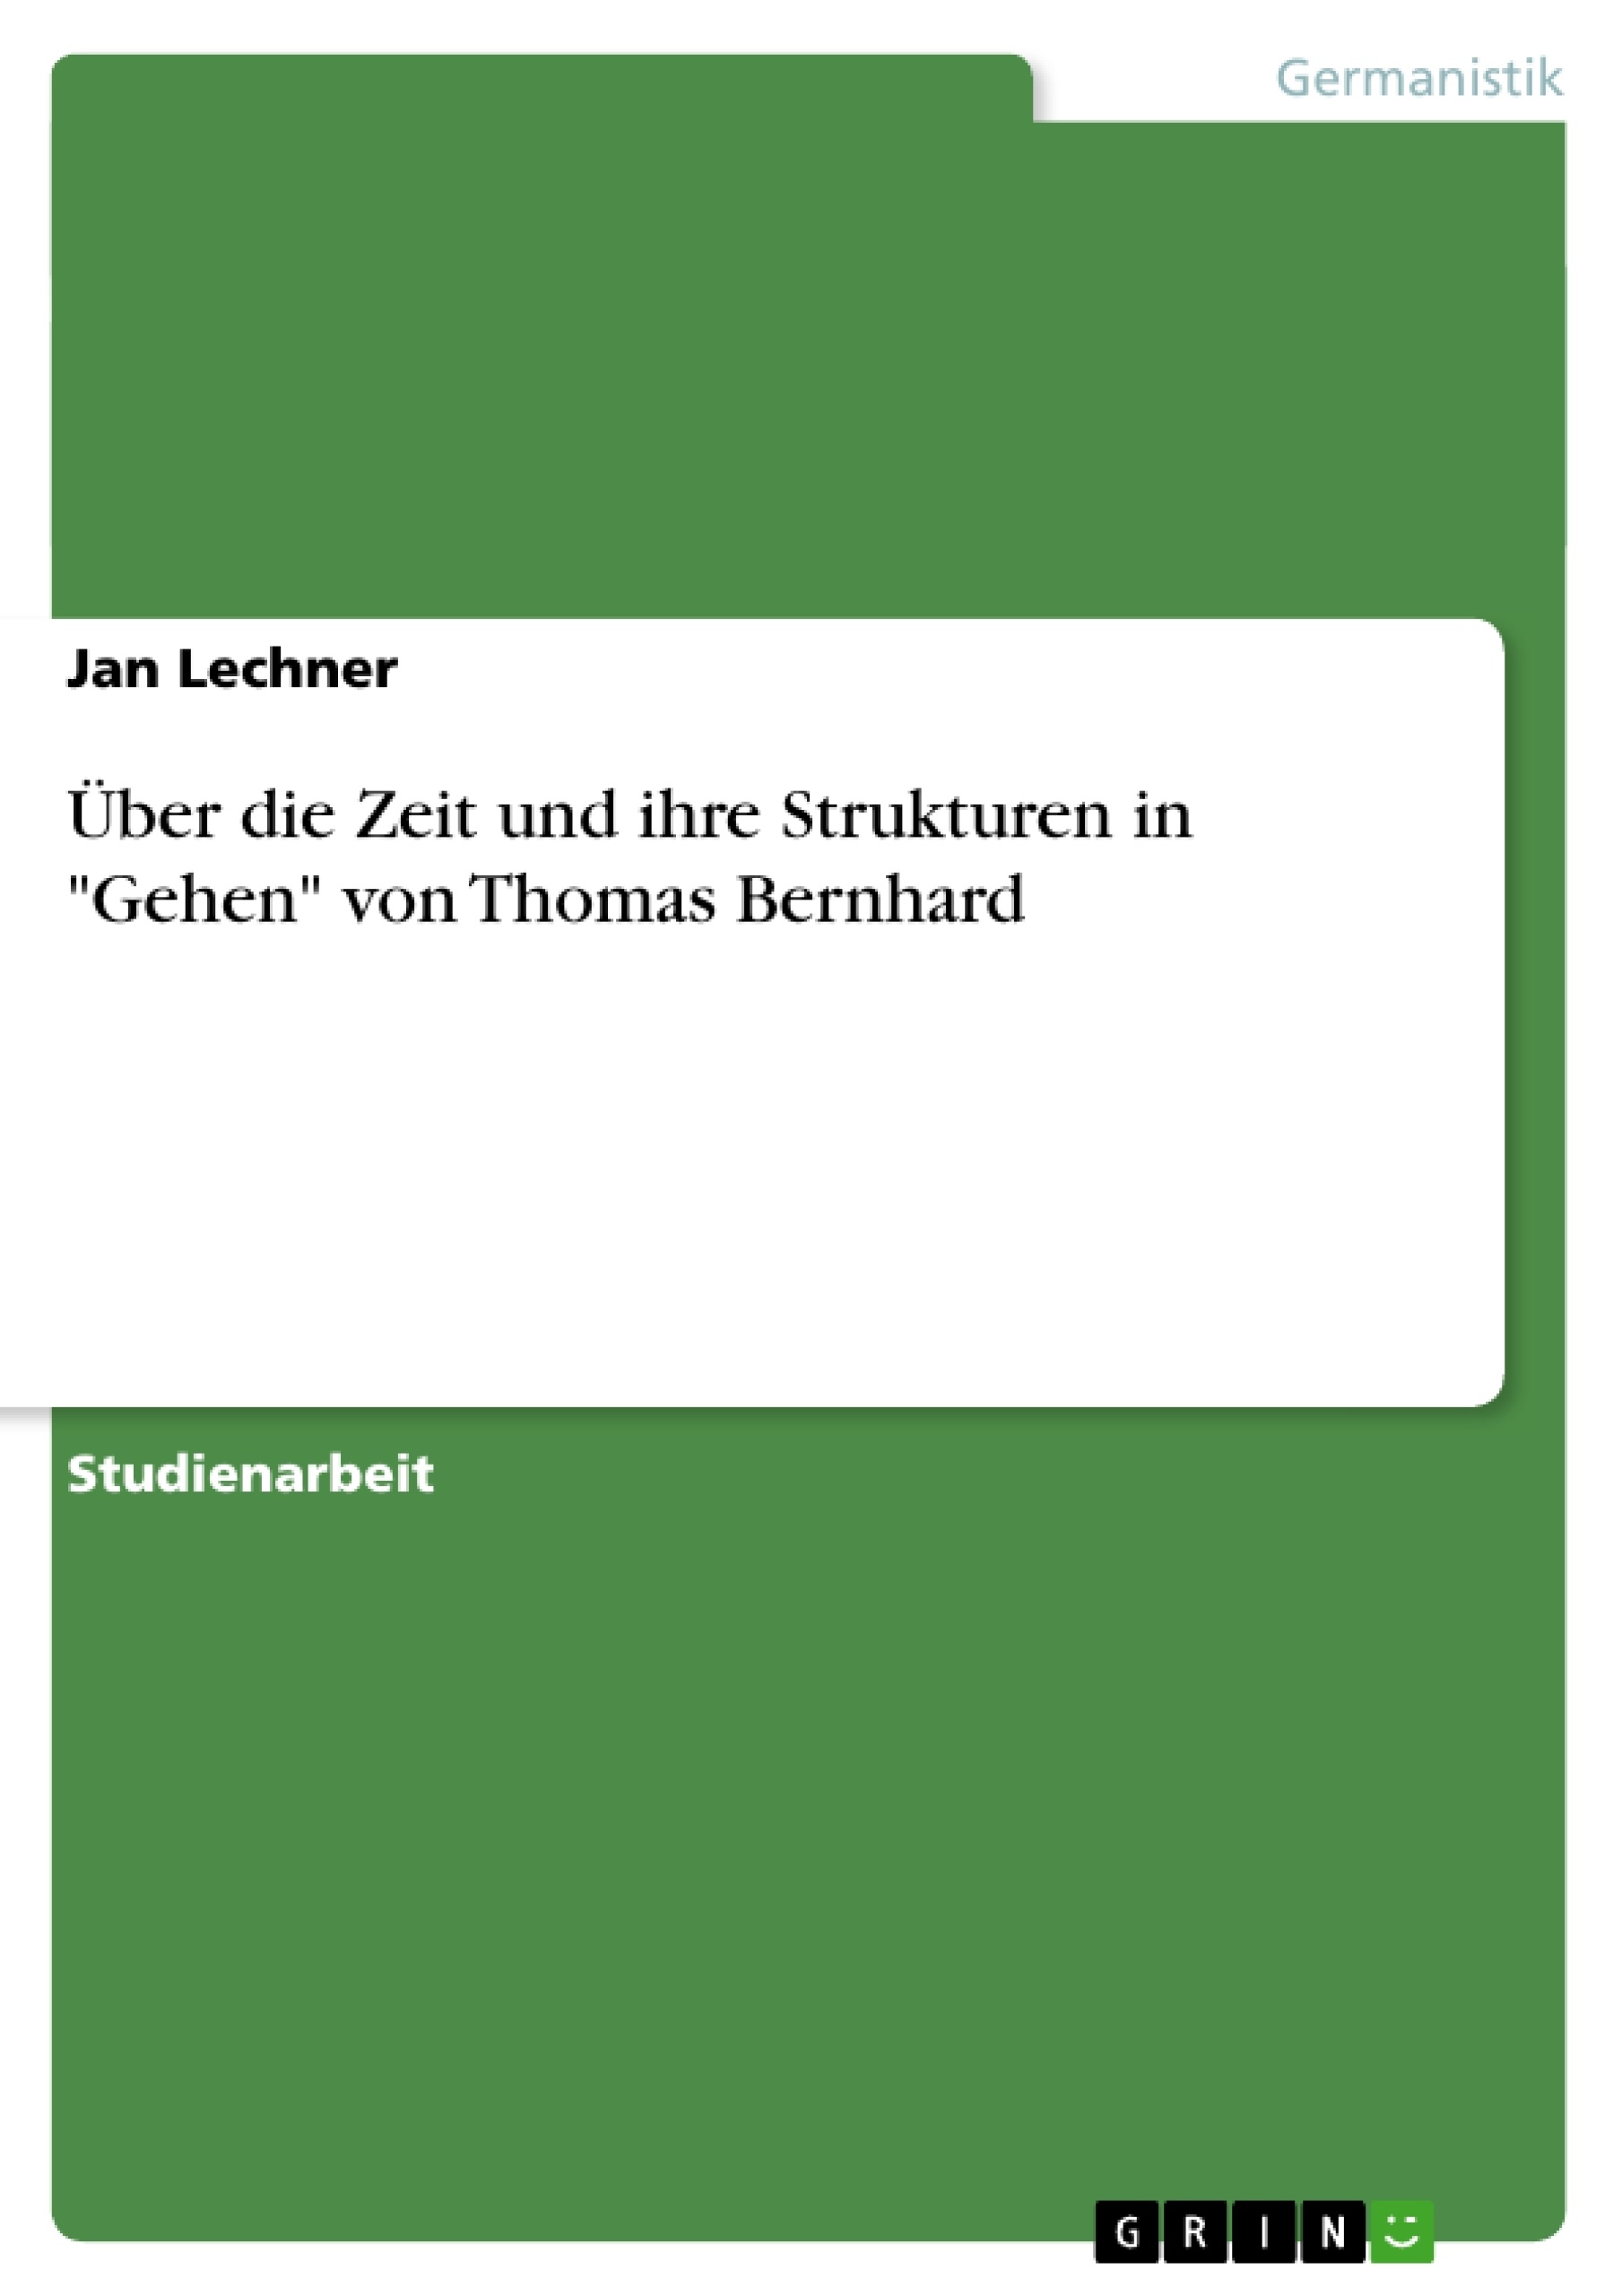 Título: Über die Zeit und ihre Strukturen in "Gehen" von Thomas Bernhard